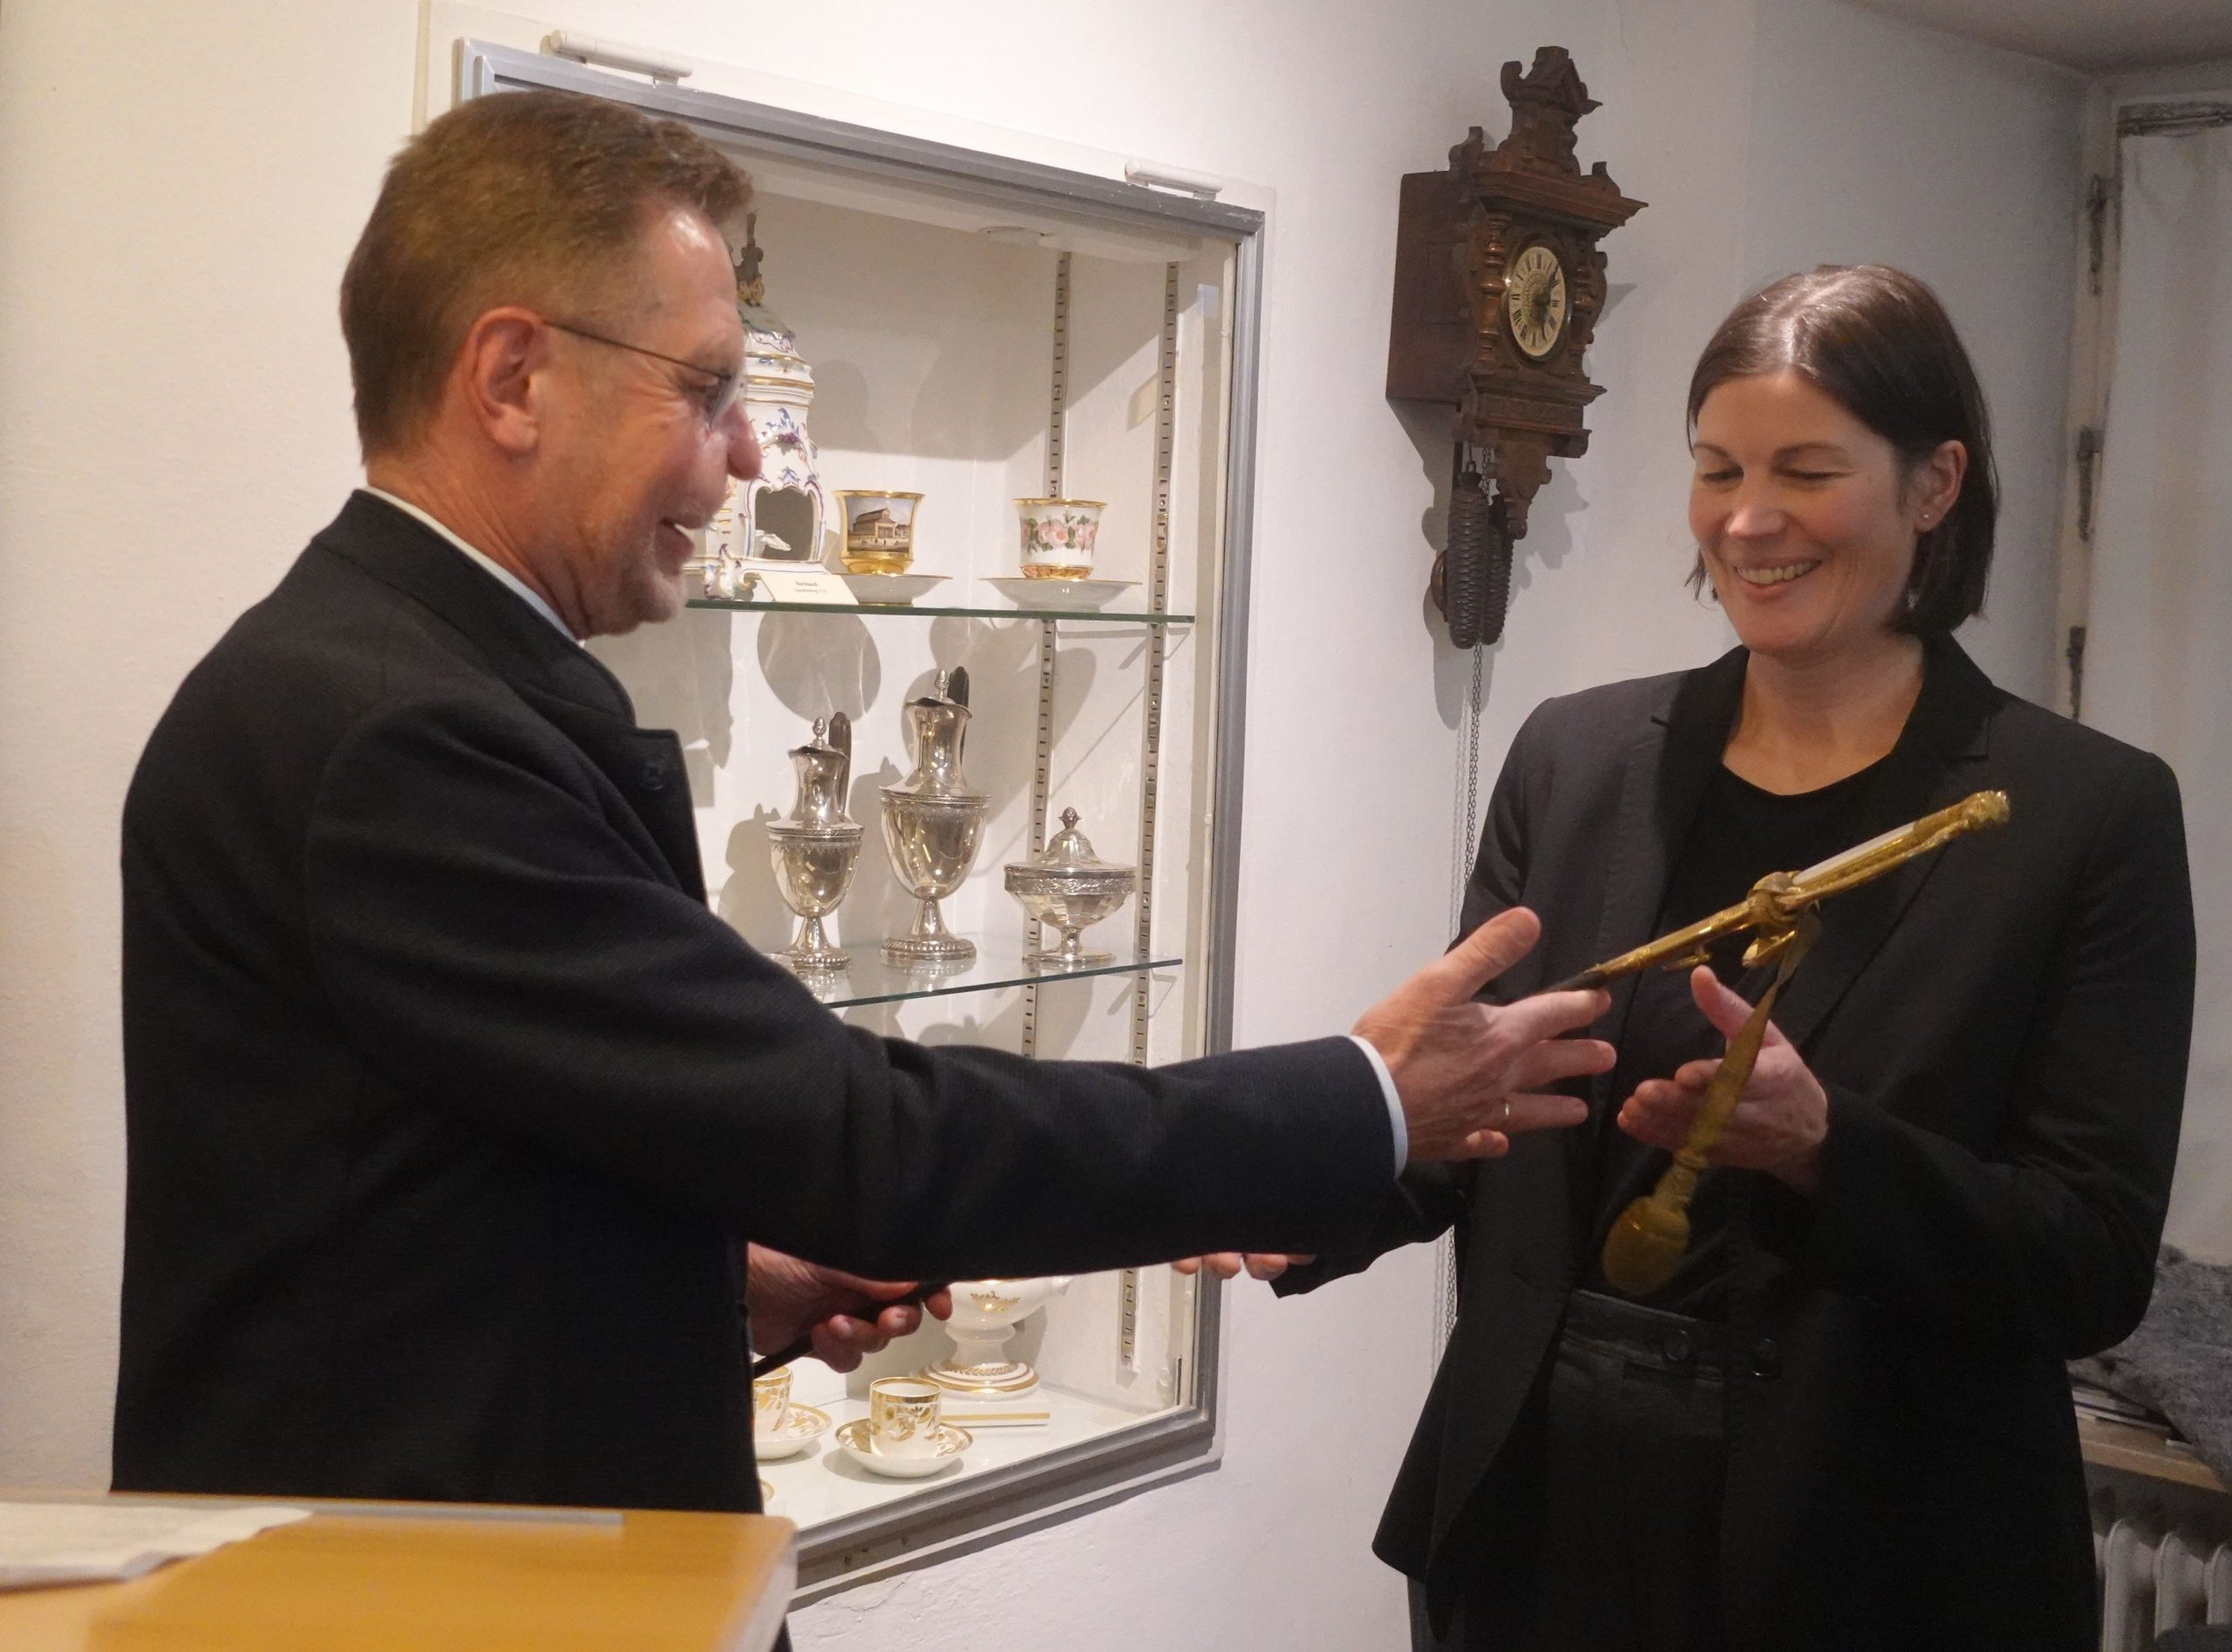 Der ehemalige Museumsleiter Walter Leicht übergibt den Degen an die neue Museumsleiterin Andrea Krammer. Foto: Innpuls.me